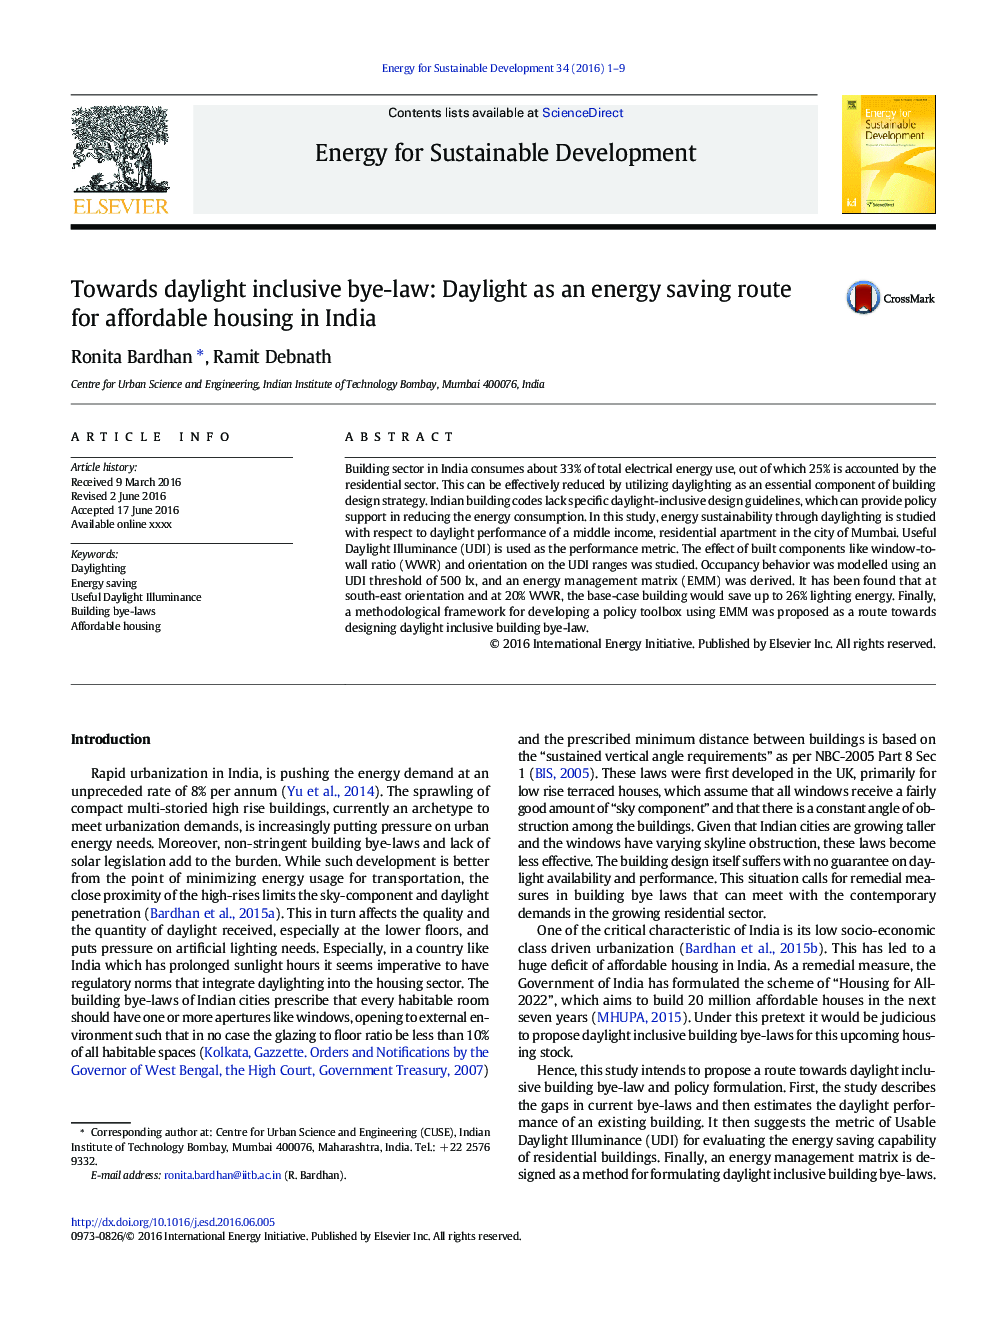 به سمت آئین نامه روشنایی روز: روشنایی روز به عنوان یک مسیر صرفه جویی در انرژی برای مسکن ارزان قیمت در هند